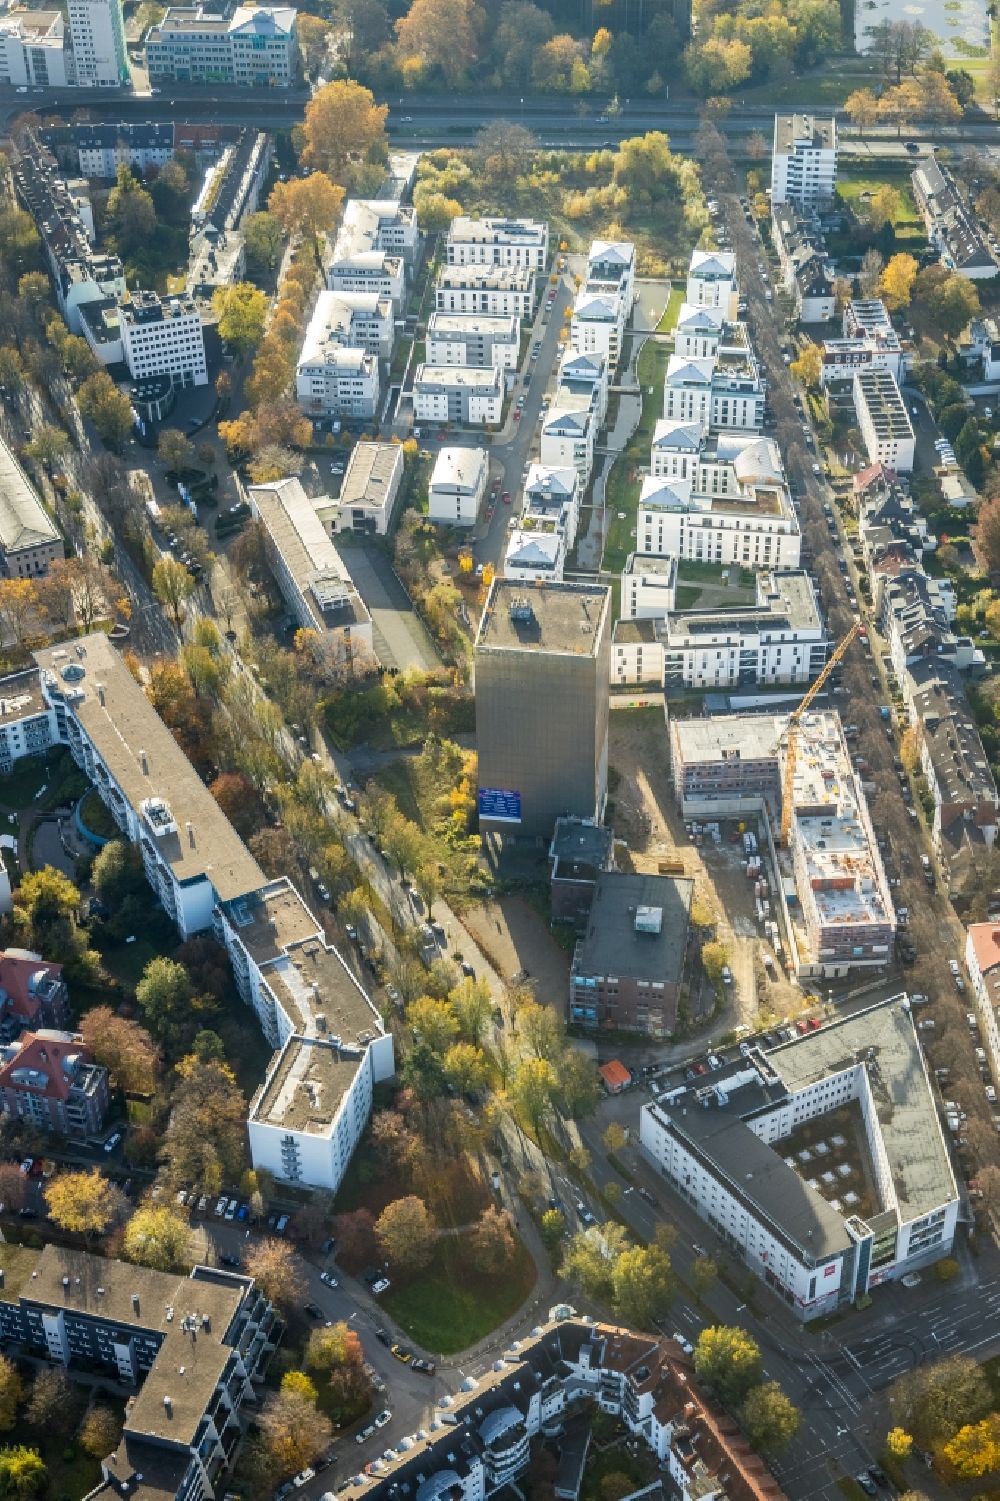 Luftbild Dortmund - Baustelle an Industrie- Ruine Kronenturm zum Neubau eines Wohngebäudes an der Kronenstraße in Dortmund im Bundesland Nordrhein-Westfalen, Deutschland